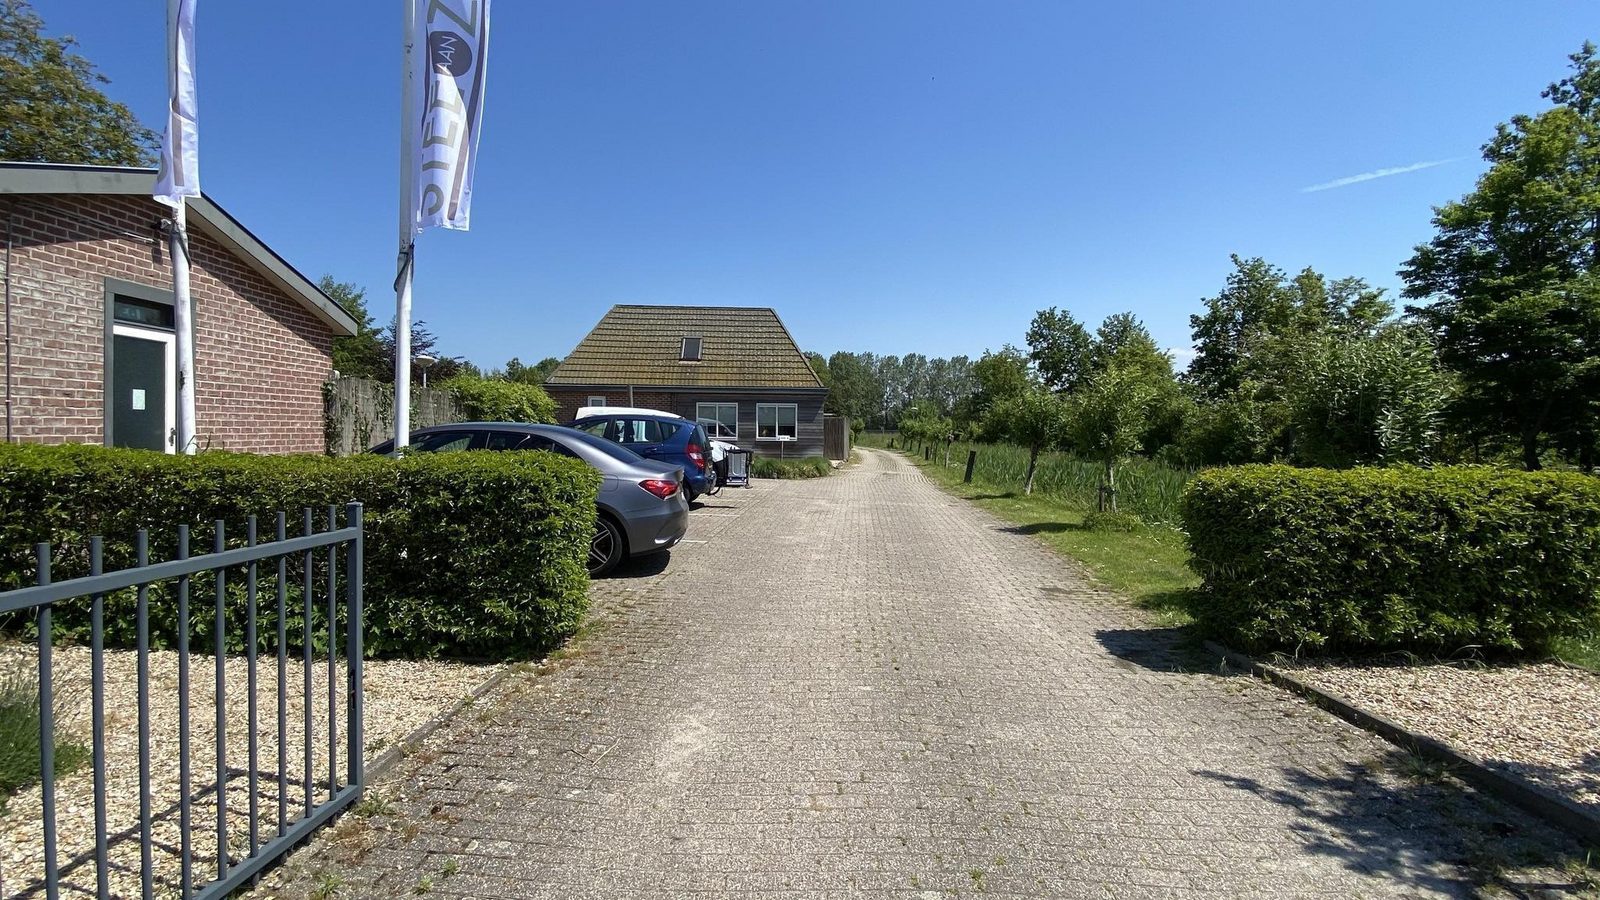 VZ1002 Holiday home in Serooskerke